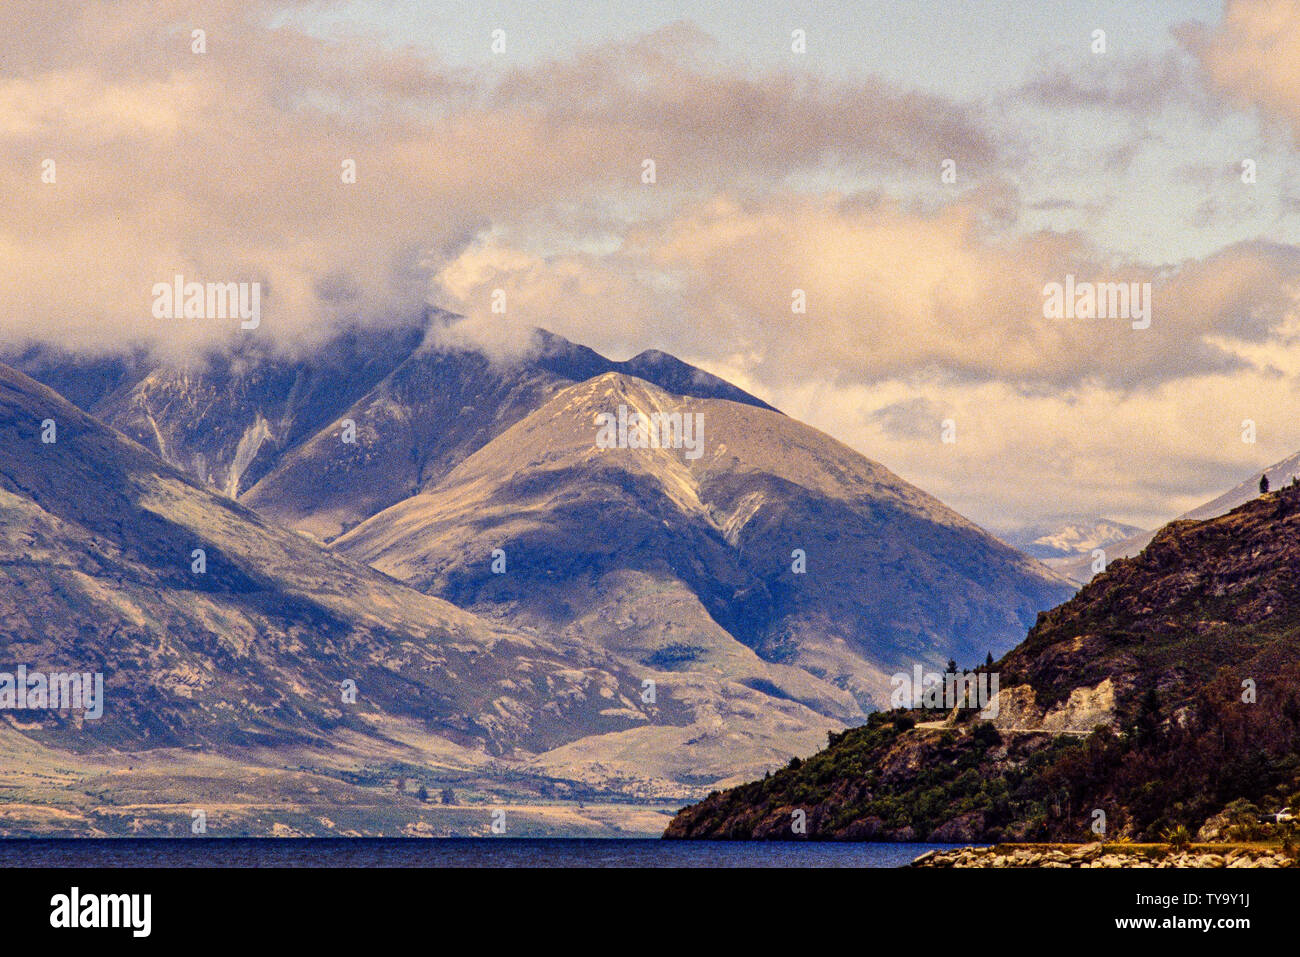 Neuseeland, Südinsel. Landschaft mit Wakatipu See und Berge, in der Nähe von Queenstown. Foto: © Simon Grosset. Archiv: Bild aus einem beschäftigungsprojekt digitalisiert Stockfoto